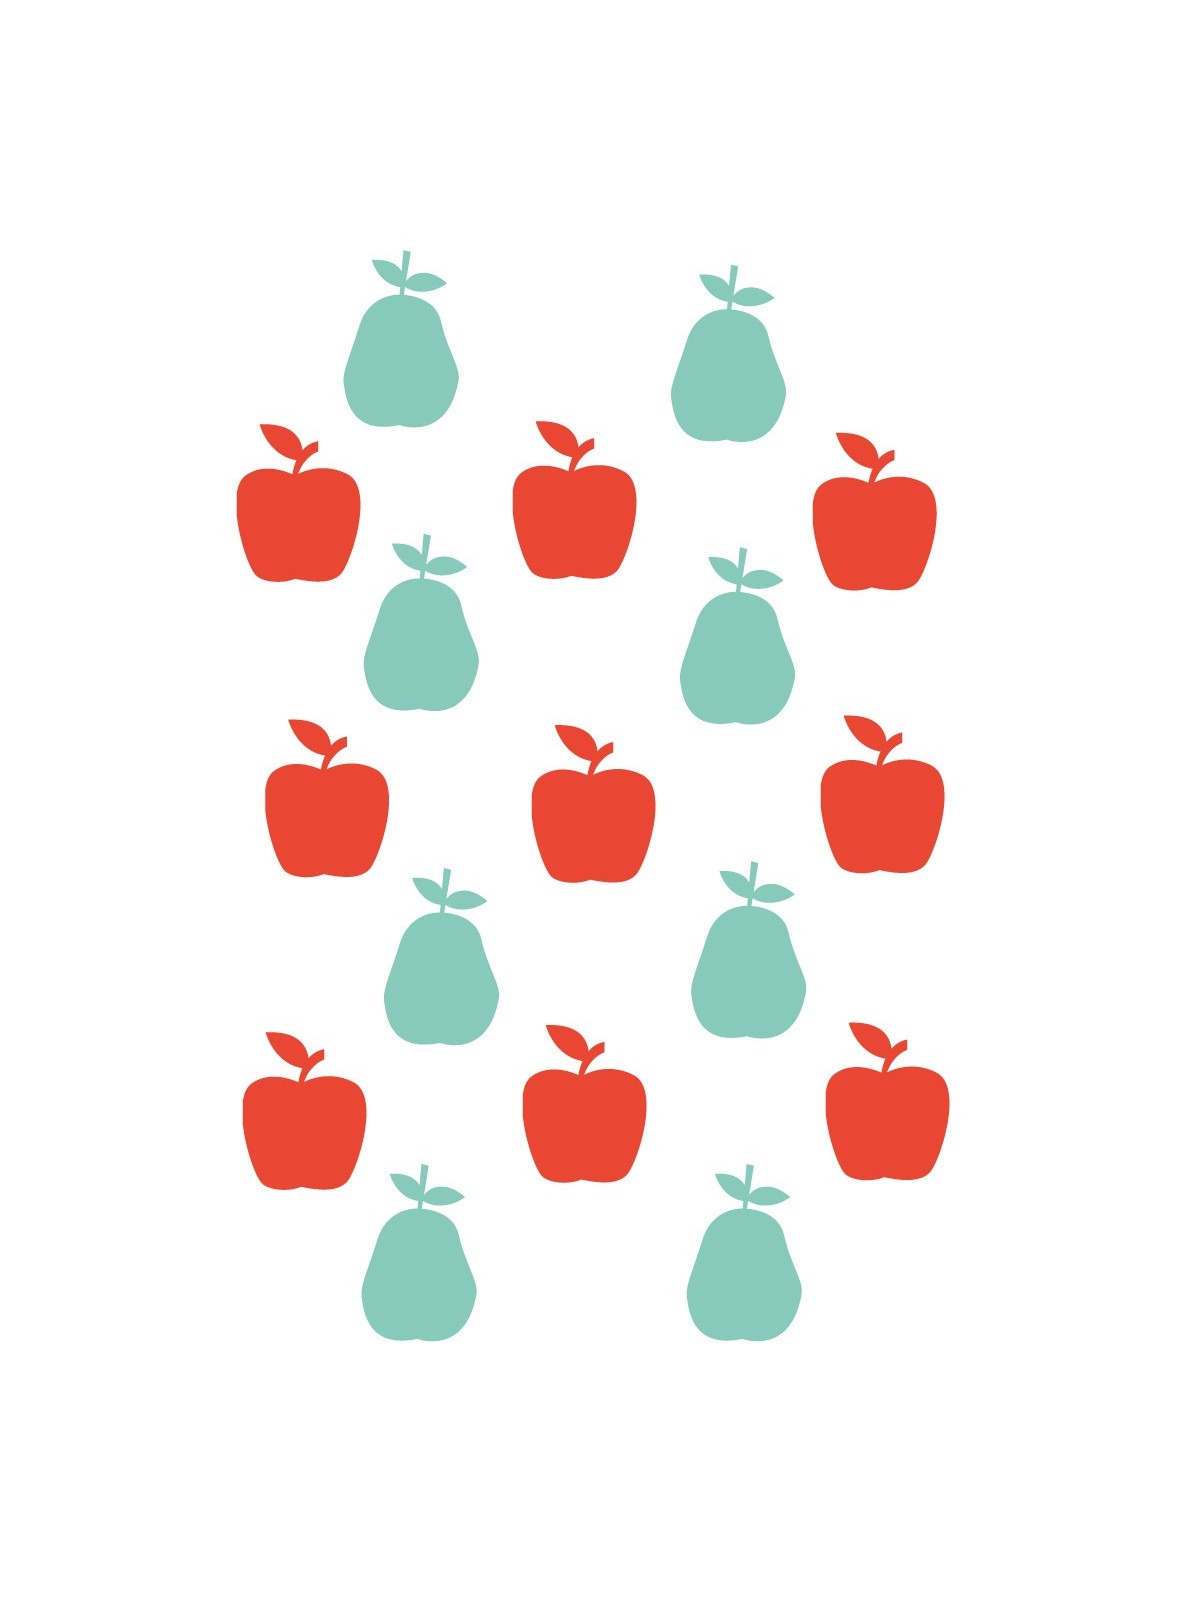 Stickers Autocollants enfant dÃ©co Planche A3 Fruits pommes rÃ©f 149